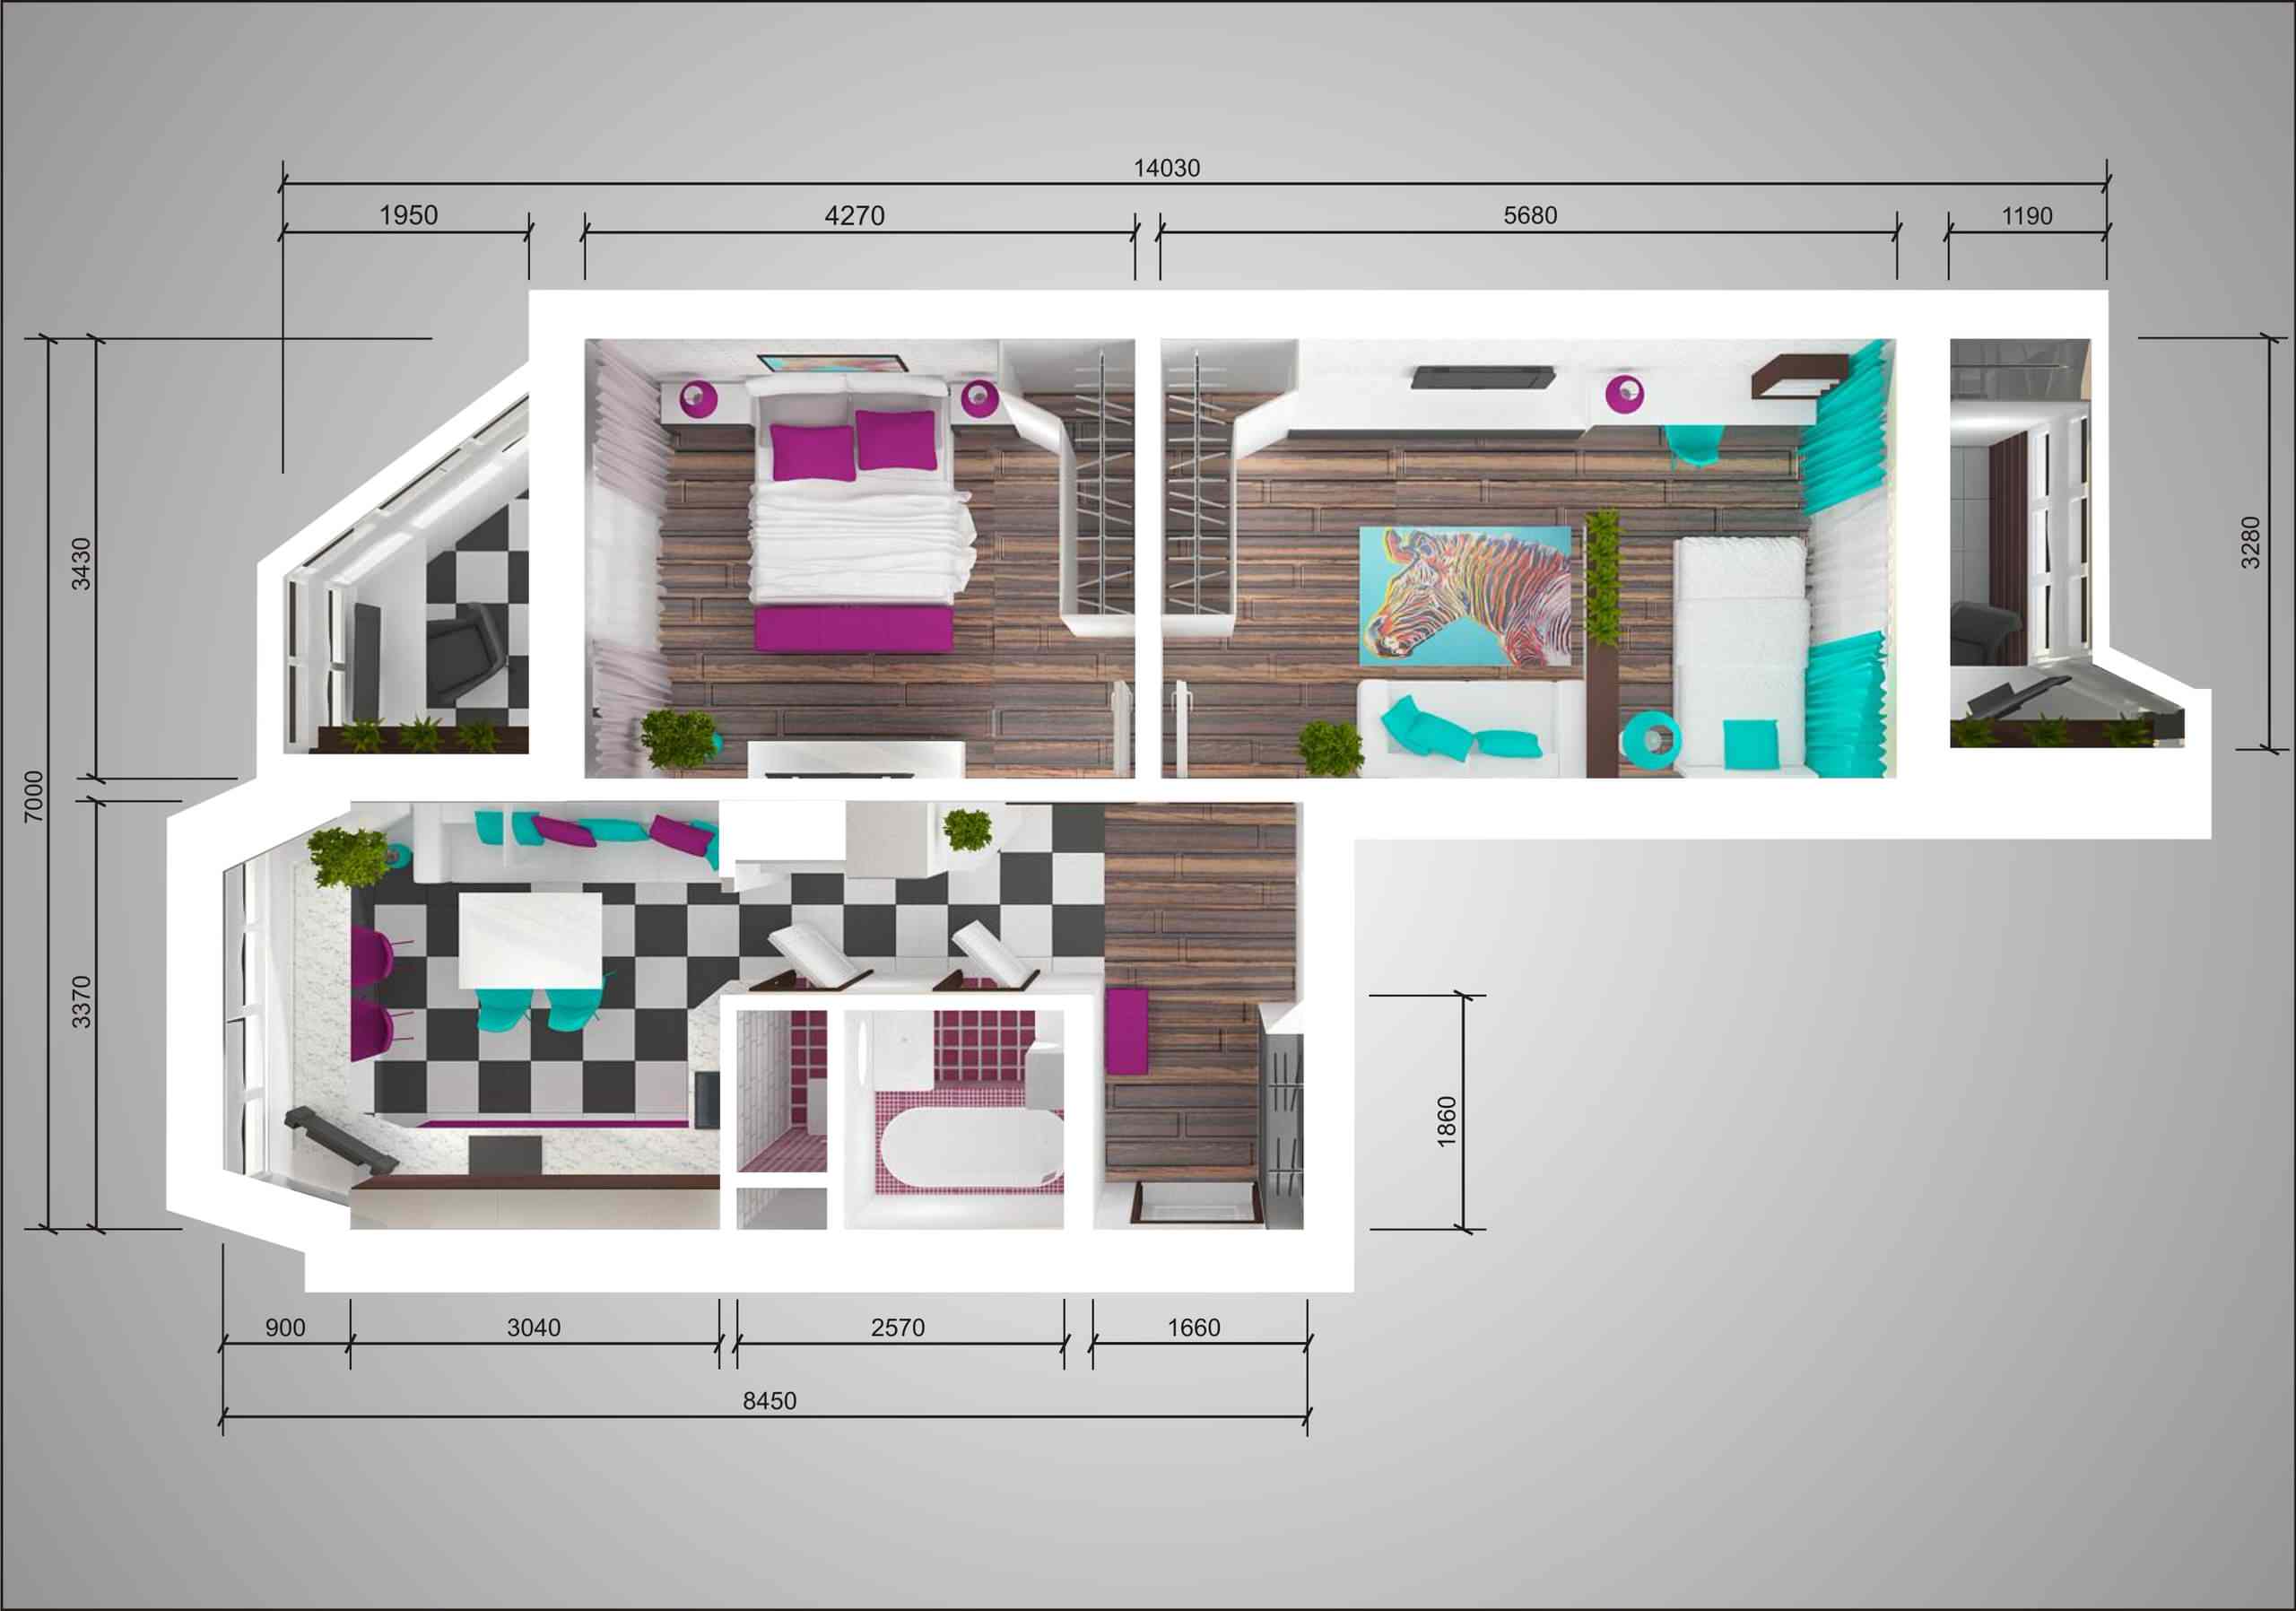 Дизайн-проект двухкомнатной квартиры п44т «распашонка»: фото планировкидвушки-«распашонки» П-44Т